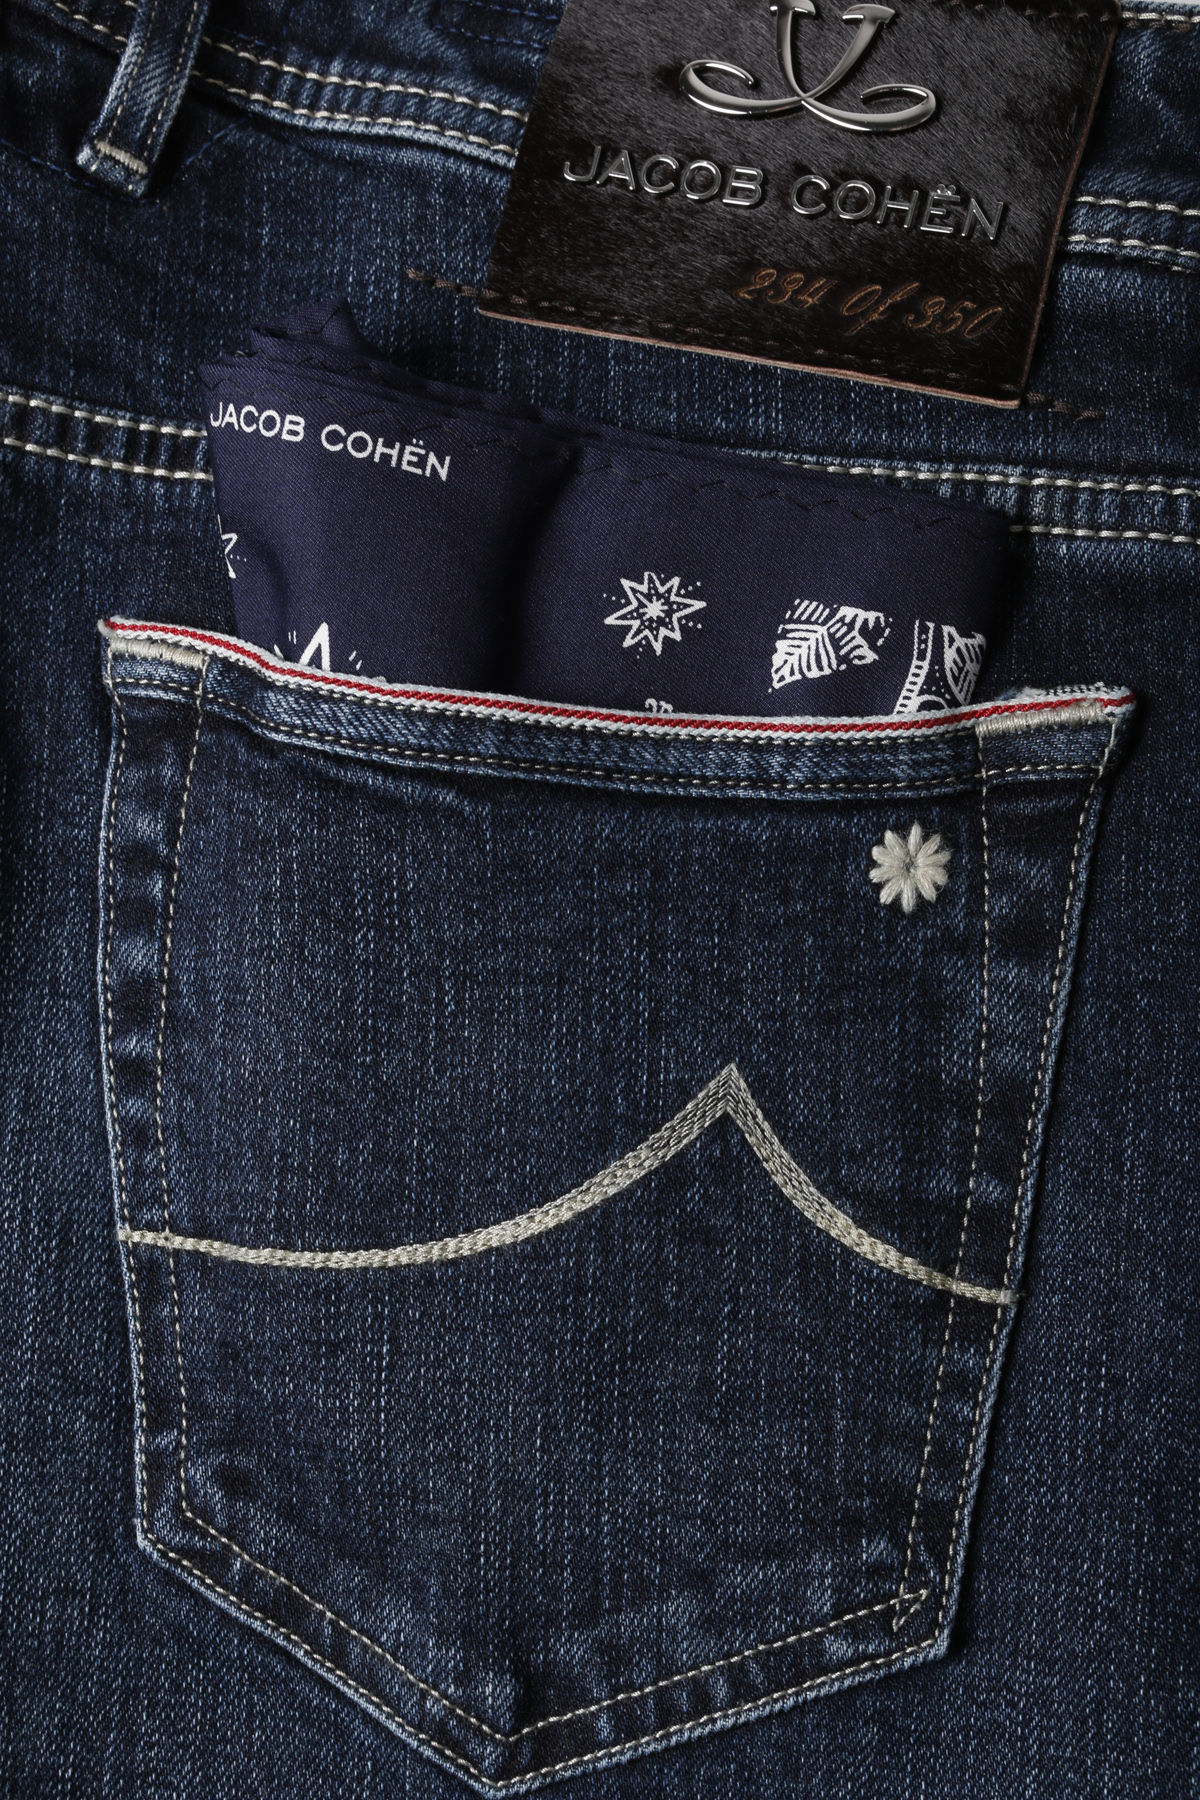 jacob cohen limited edition jeans